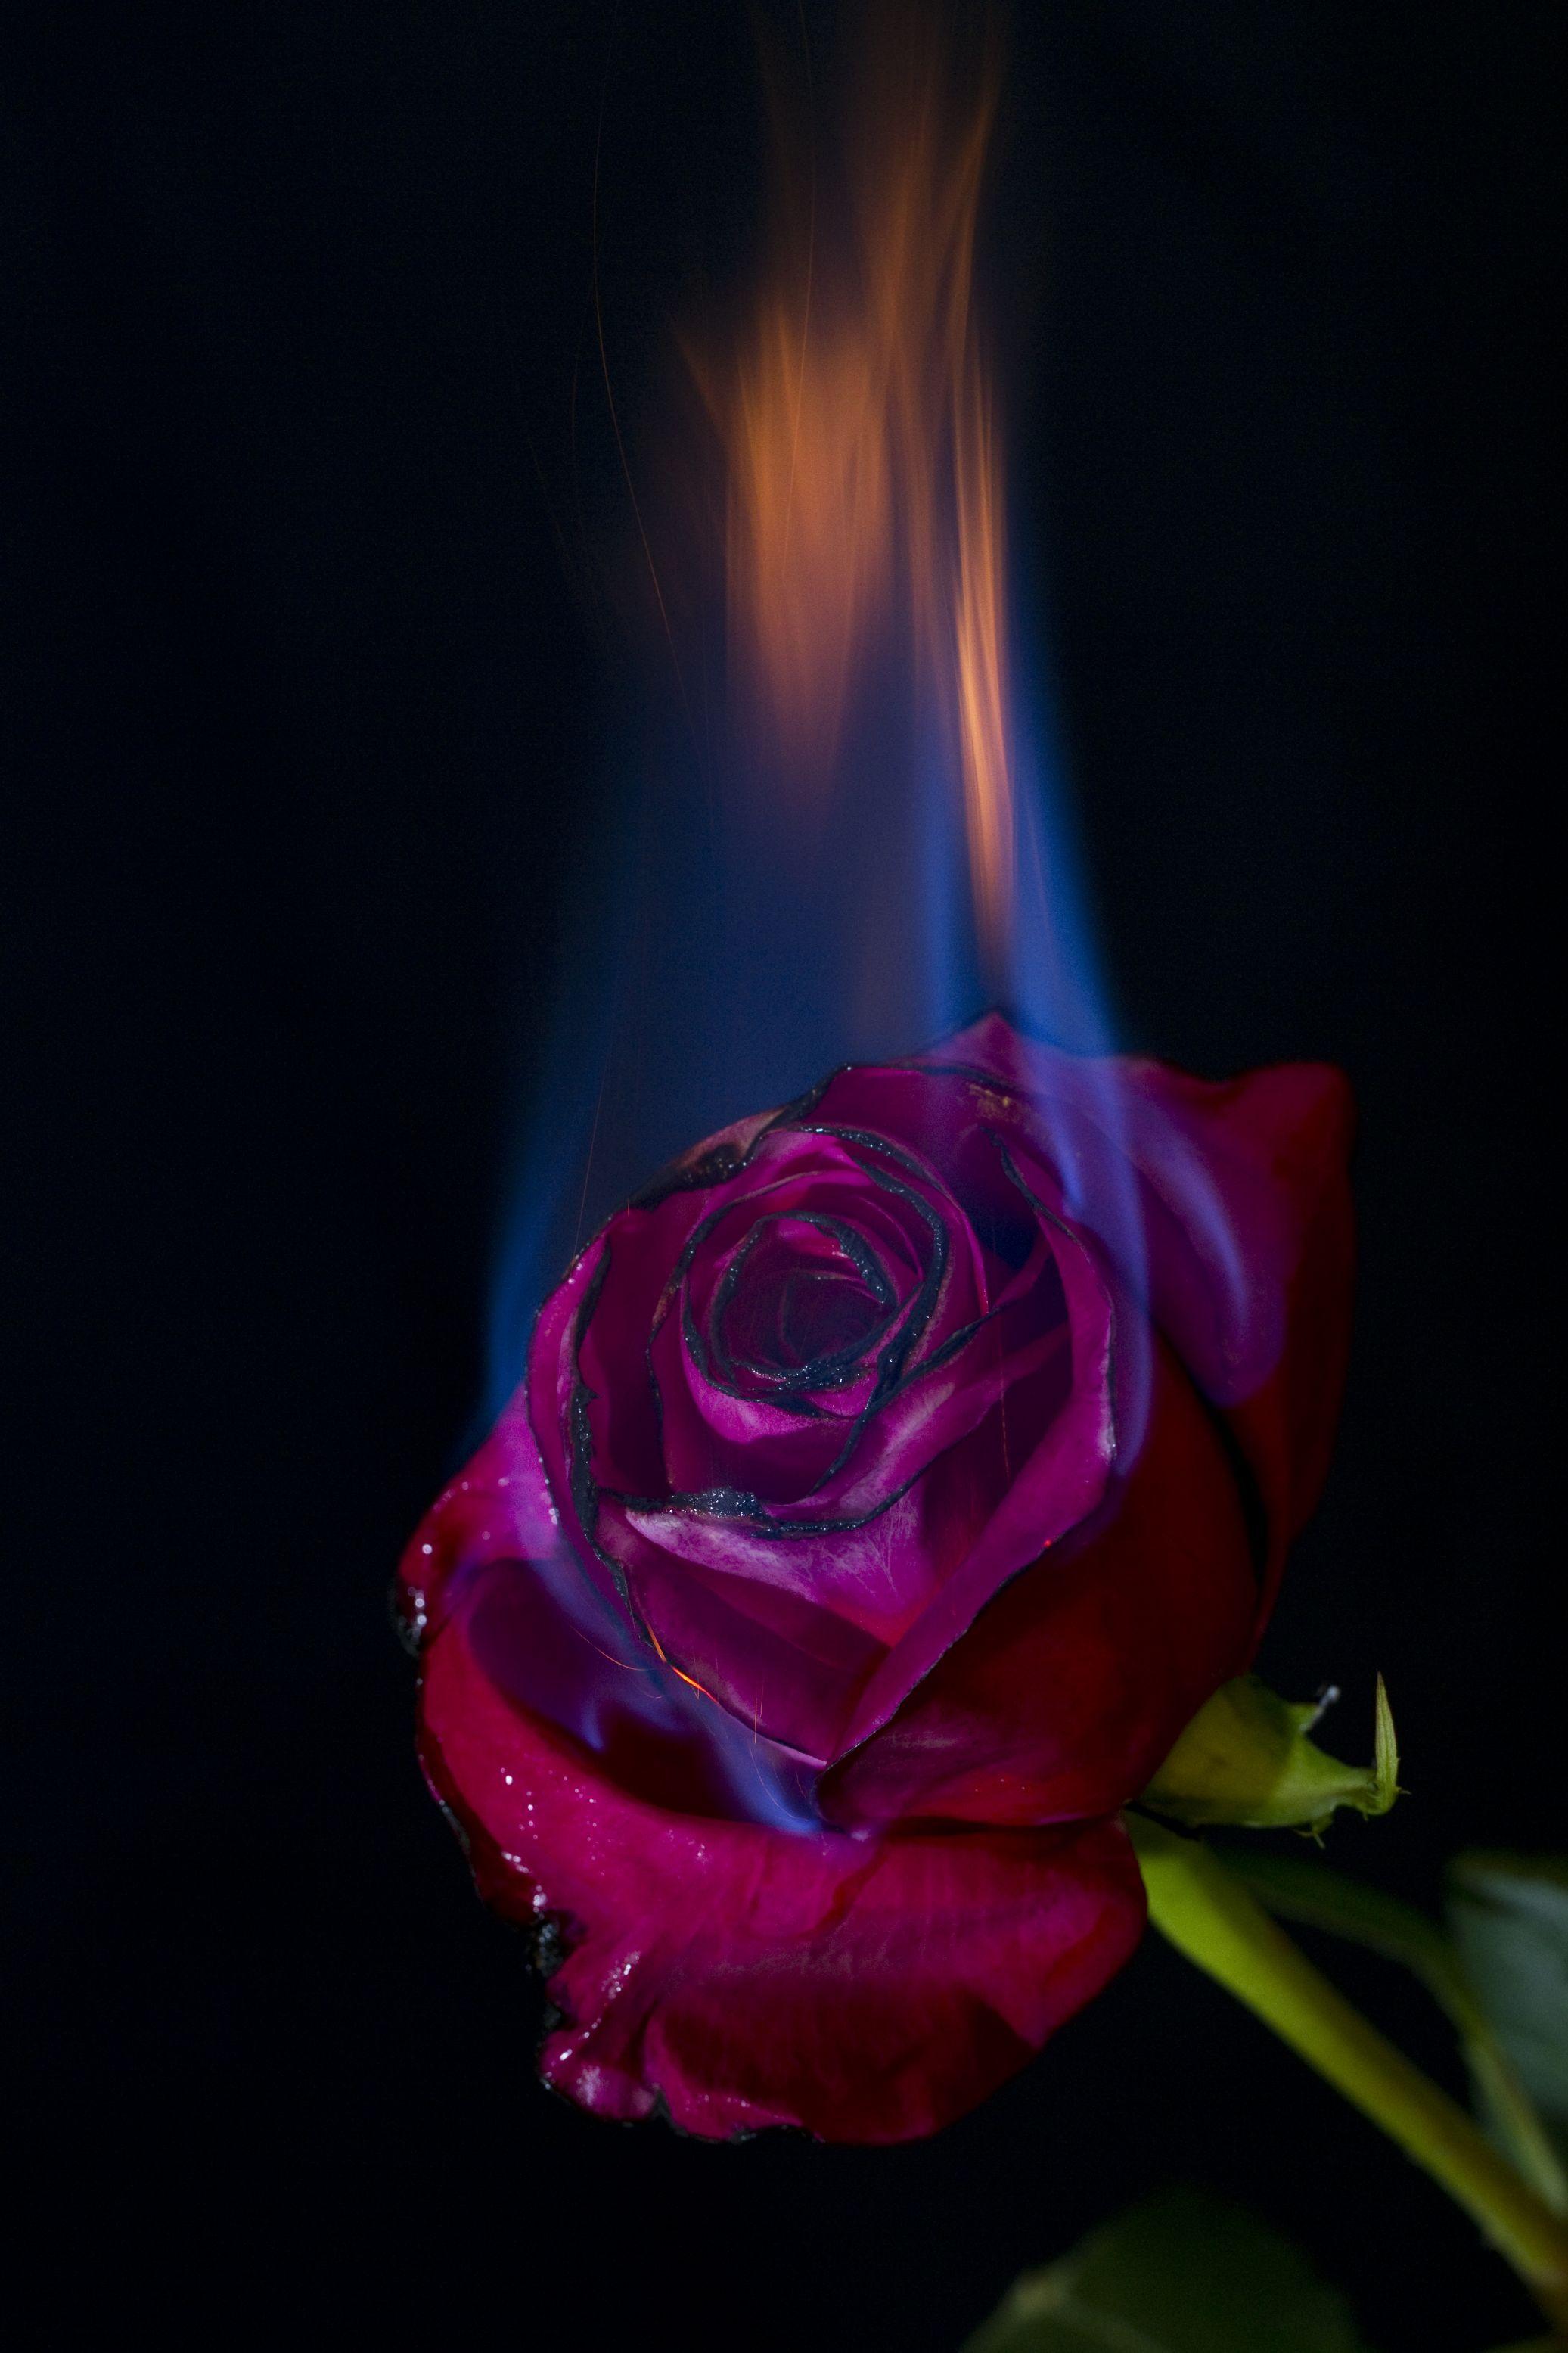 Burning Rose Images  Free Download on Freepik